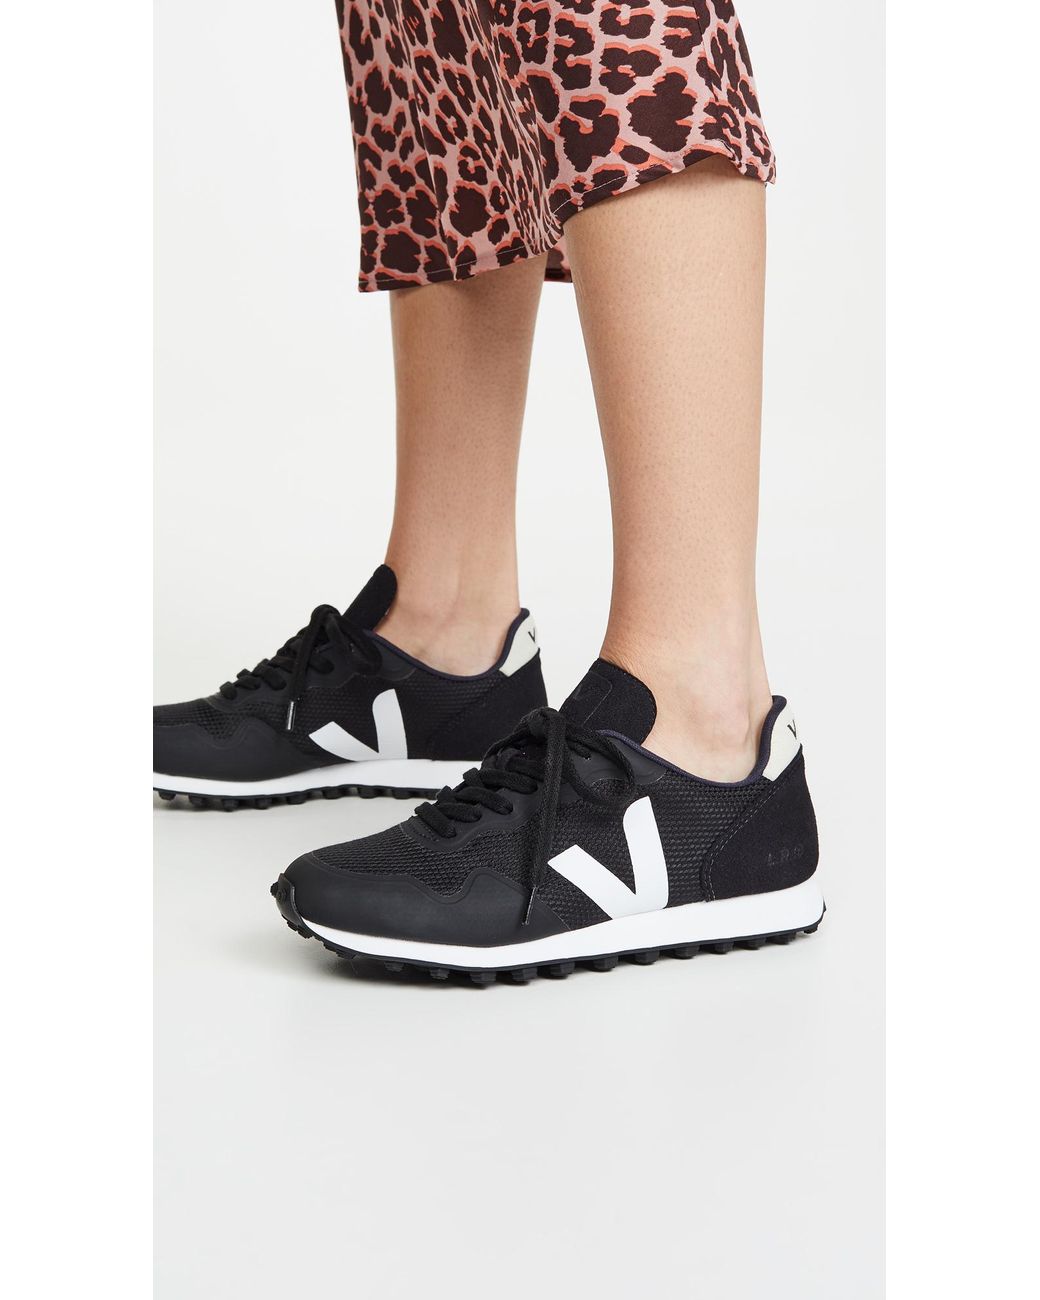 Veja Sdu Rt Sneakers in Black/White (Black) | Lyst Australia